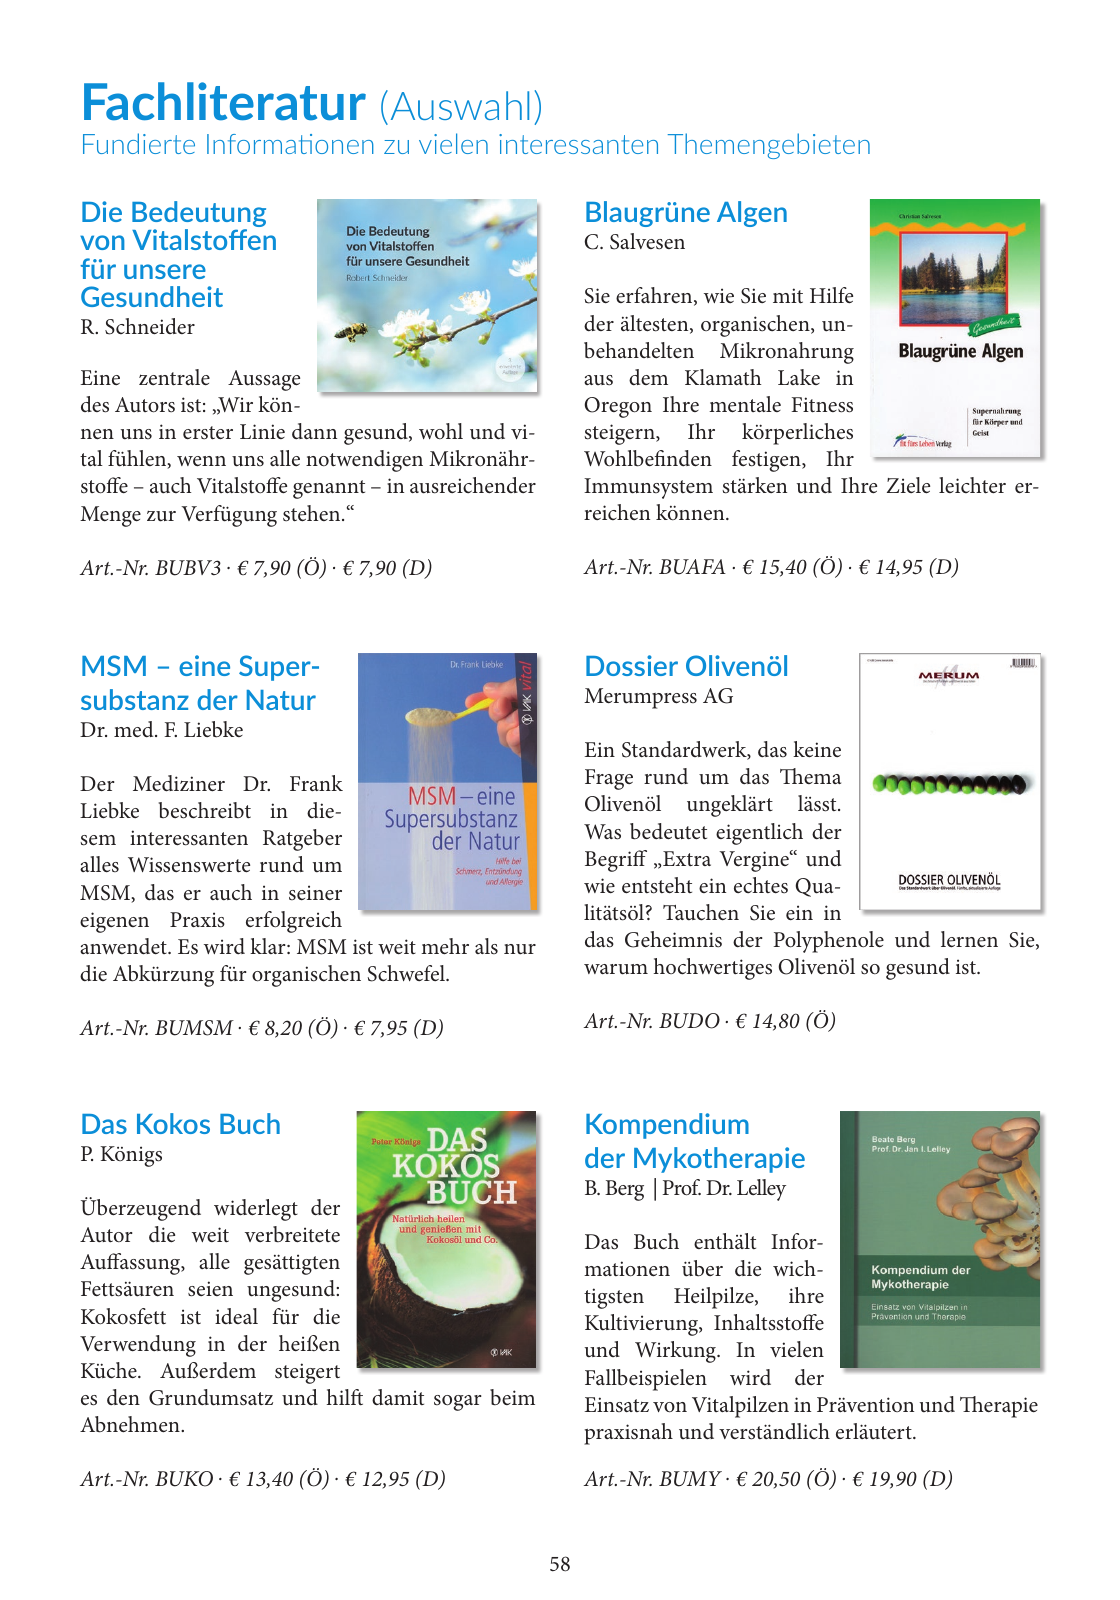 Vorschau Katalog 2019/2020 Seite 58